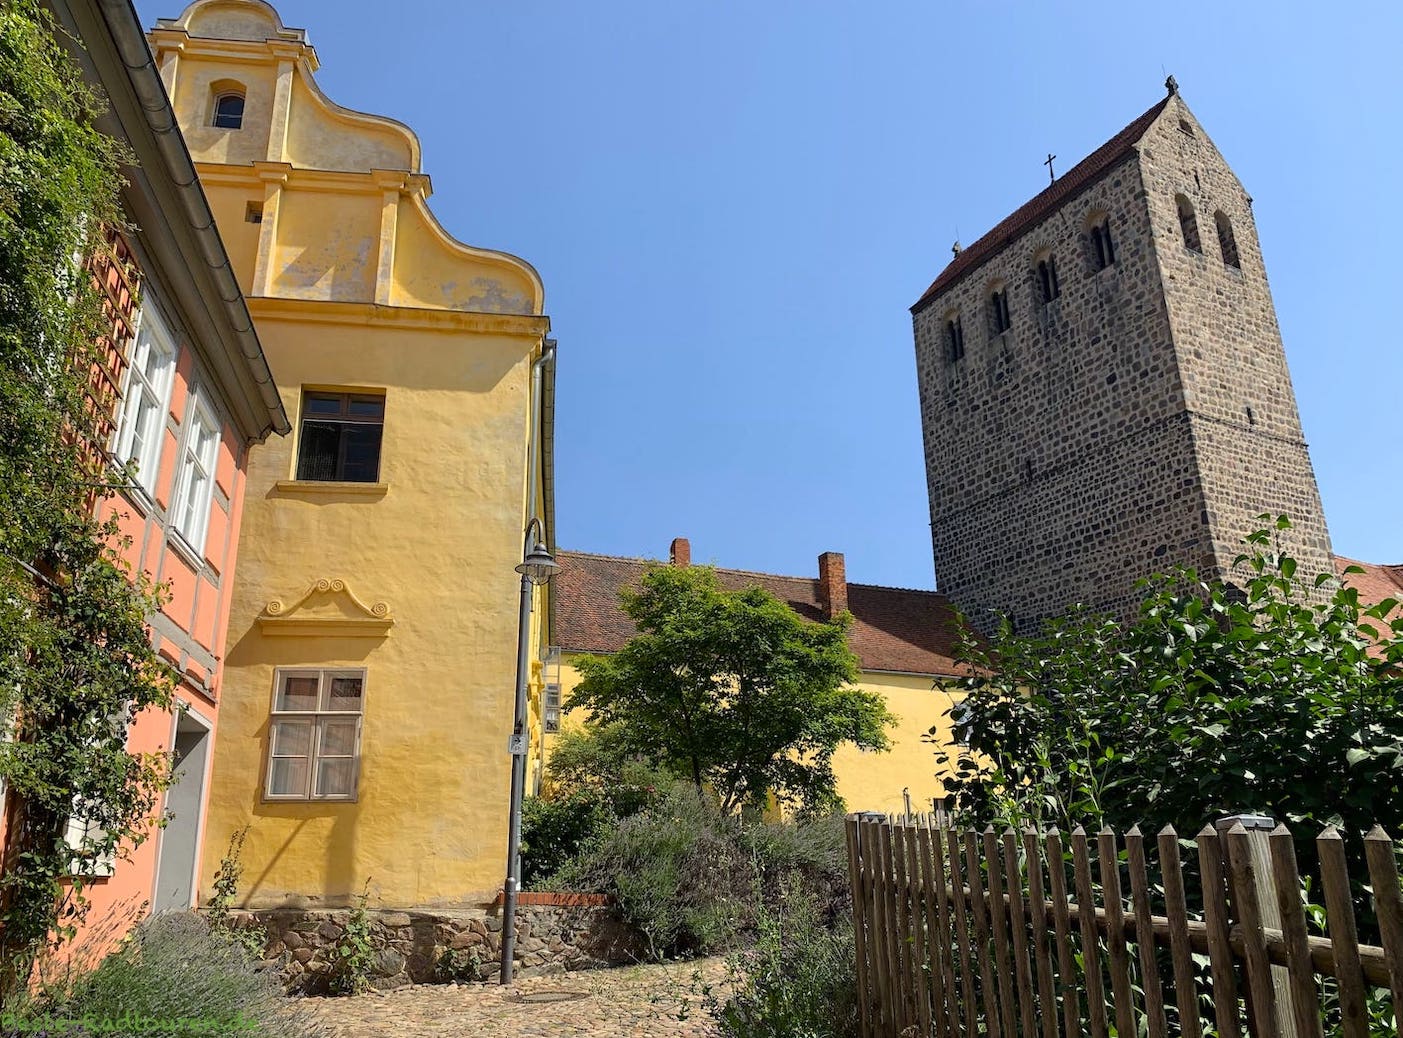 Foto vom Klostersteig in Ziesar aus: Kirche St. Crucis, Wohngebäude ehemaliges Kloster